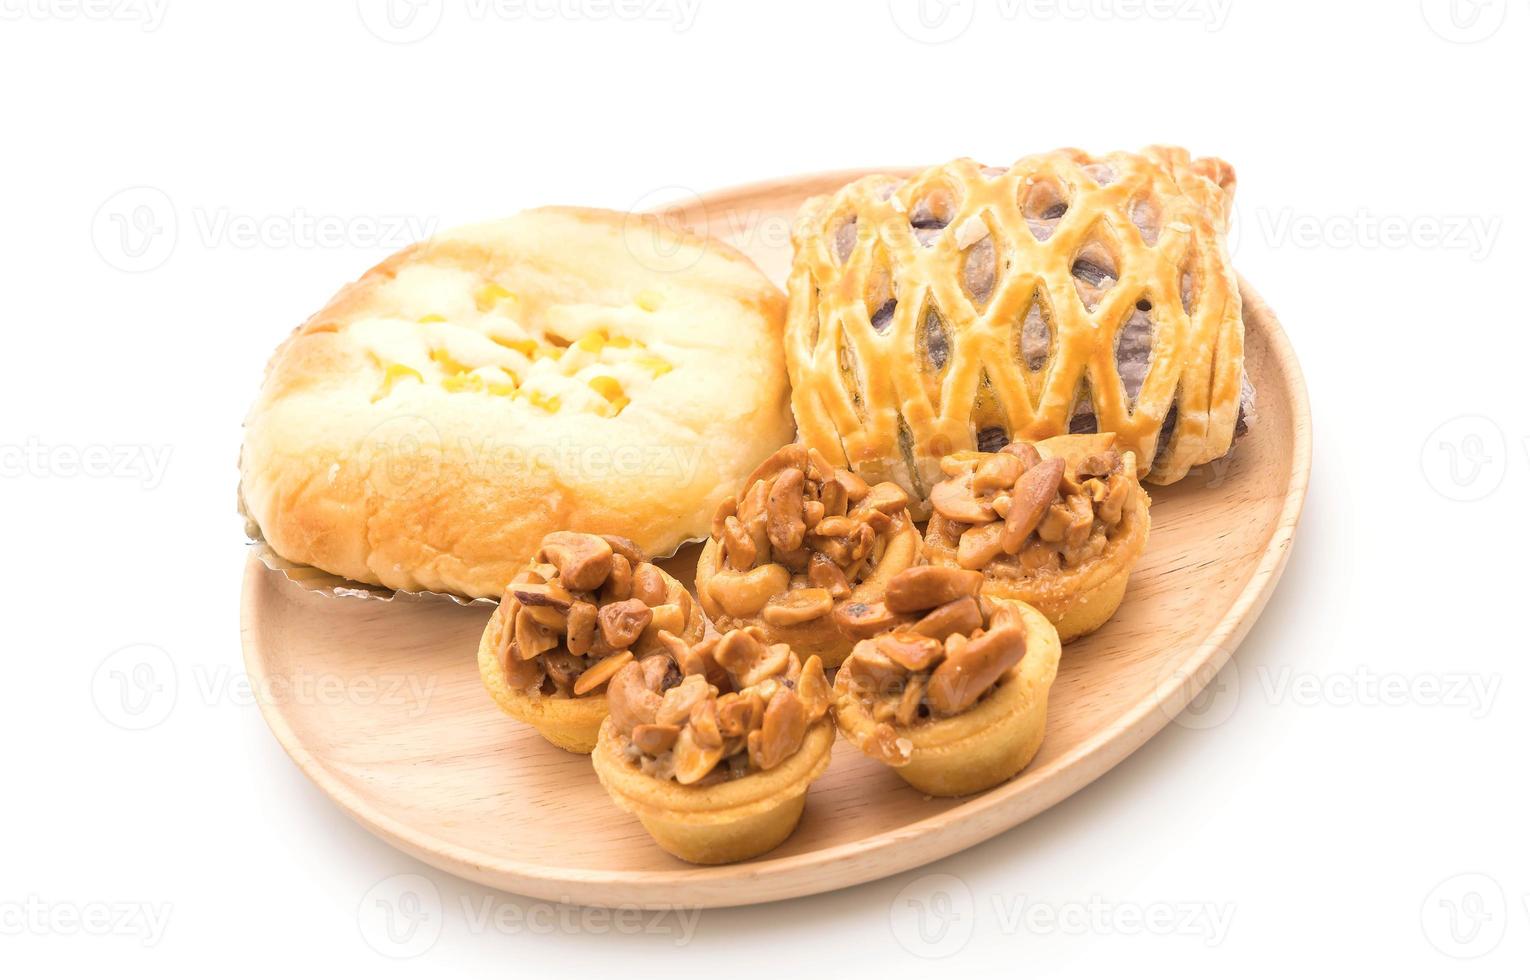 gâteau au caramel, pain avec mayonnaise au maïs et tartes au taro sur fond blanc photo